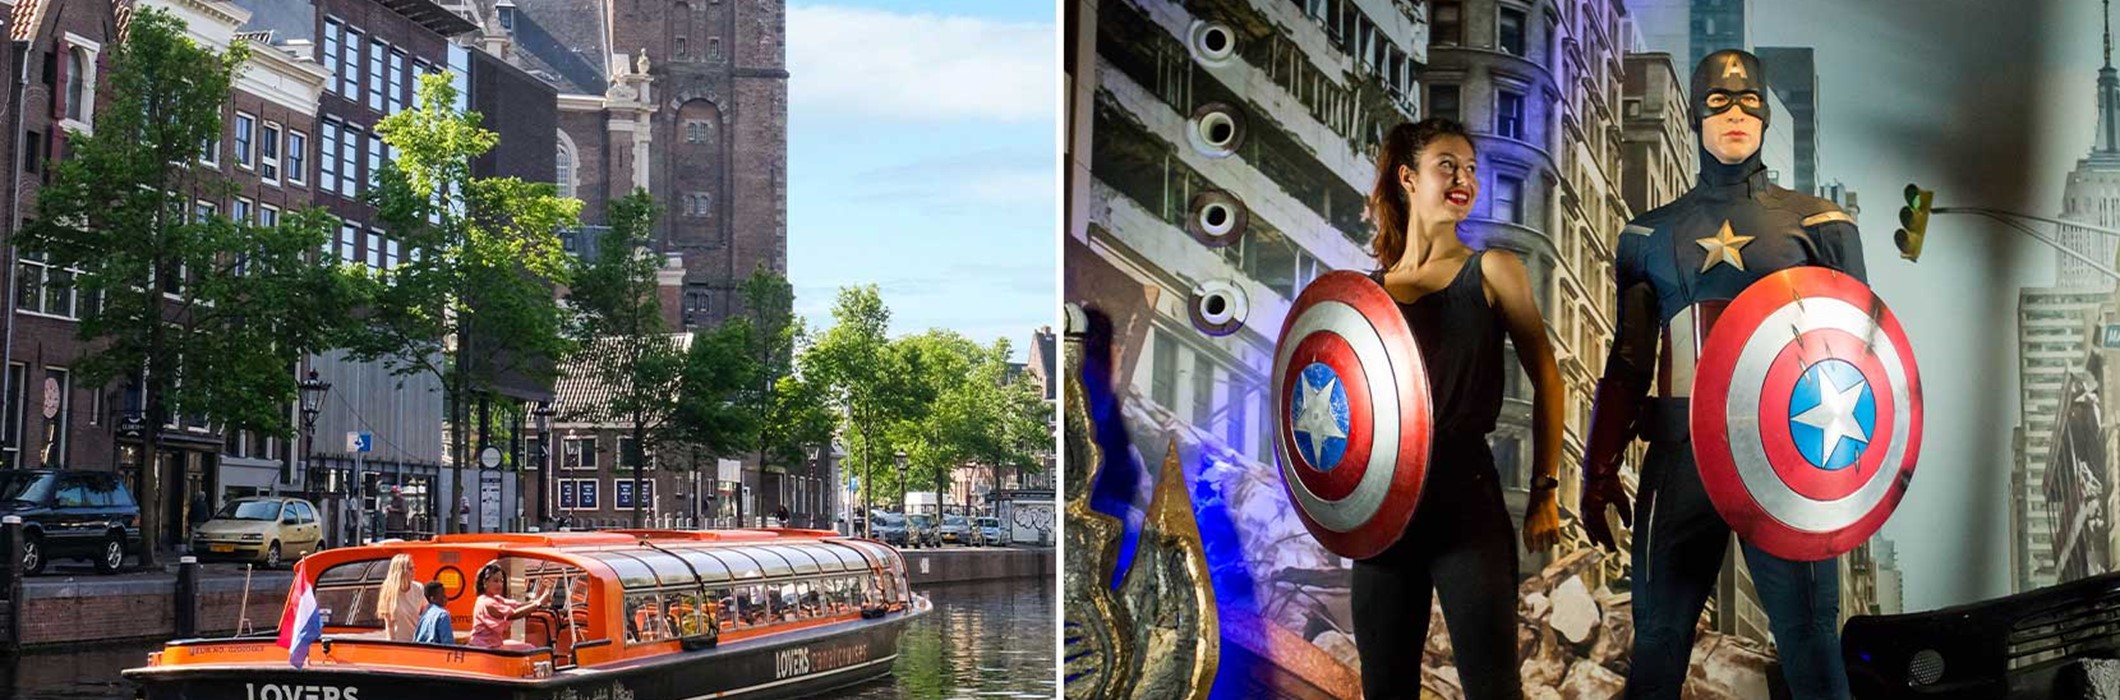 Madame Tussauds + Crociera sui canali di Amsterdam